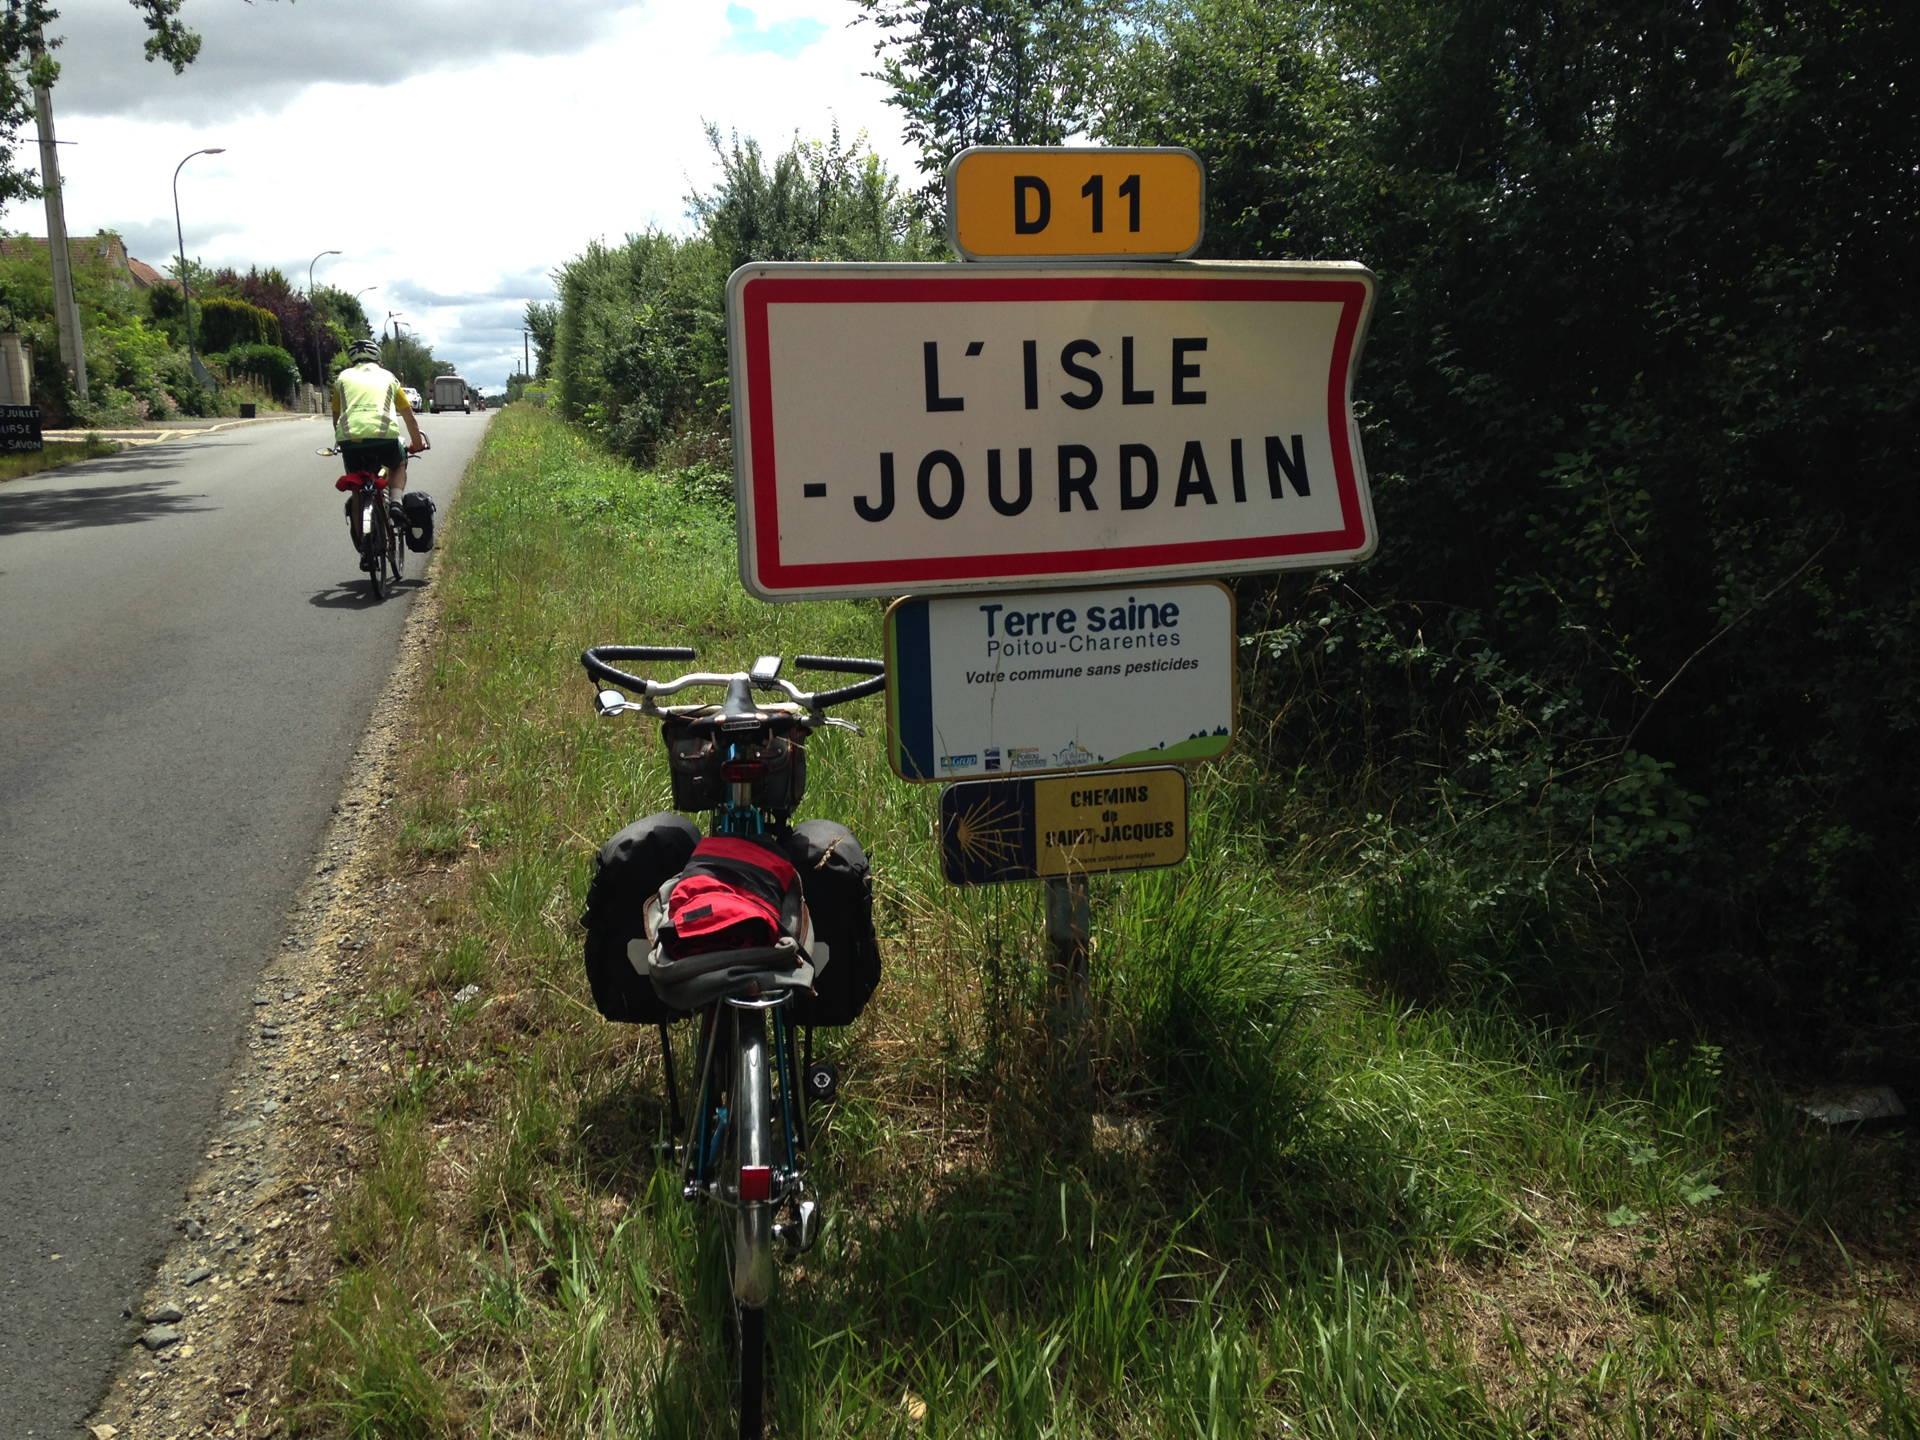 L'Isle Jourdain